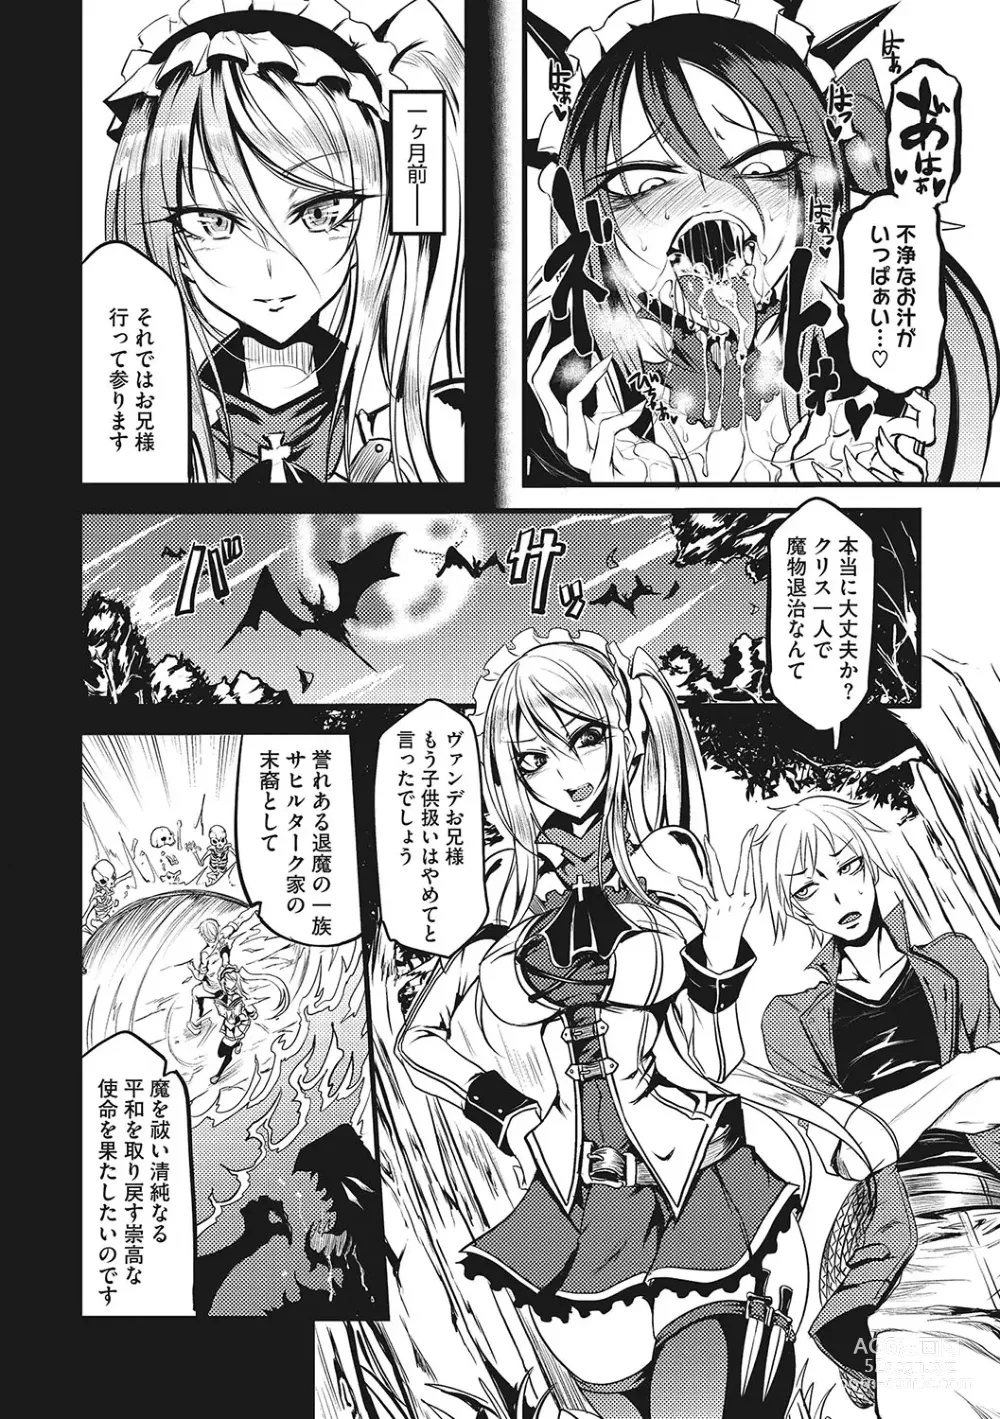 Page 273 of manga Sanpai Shoujo